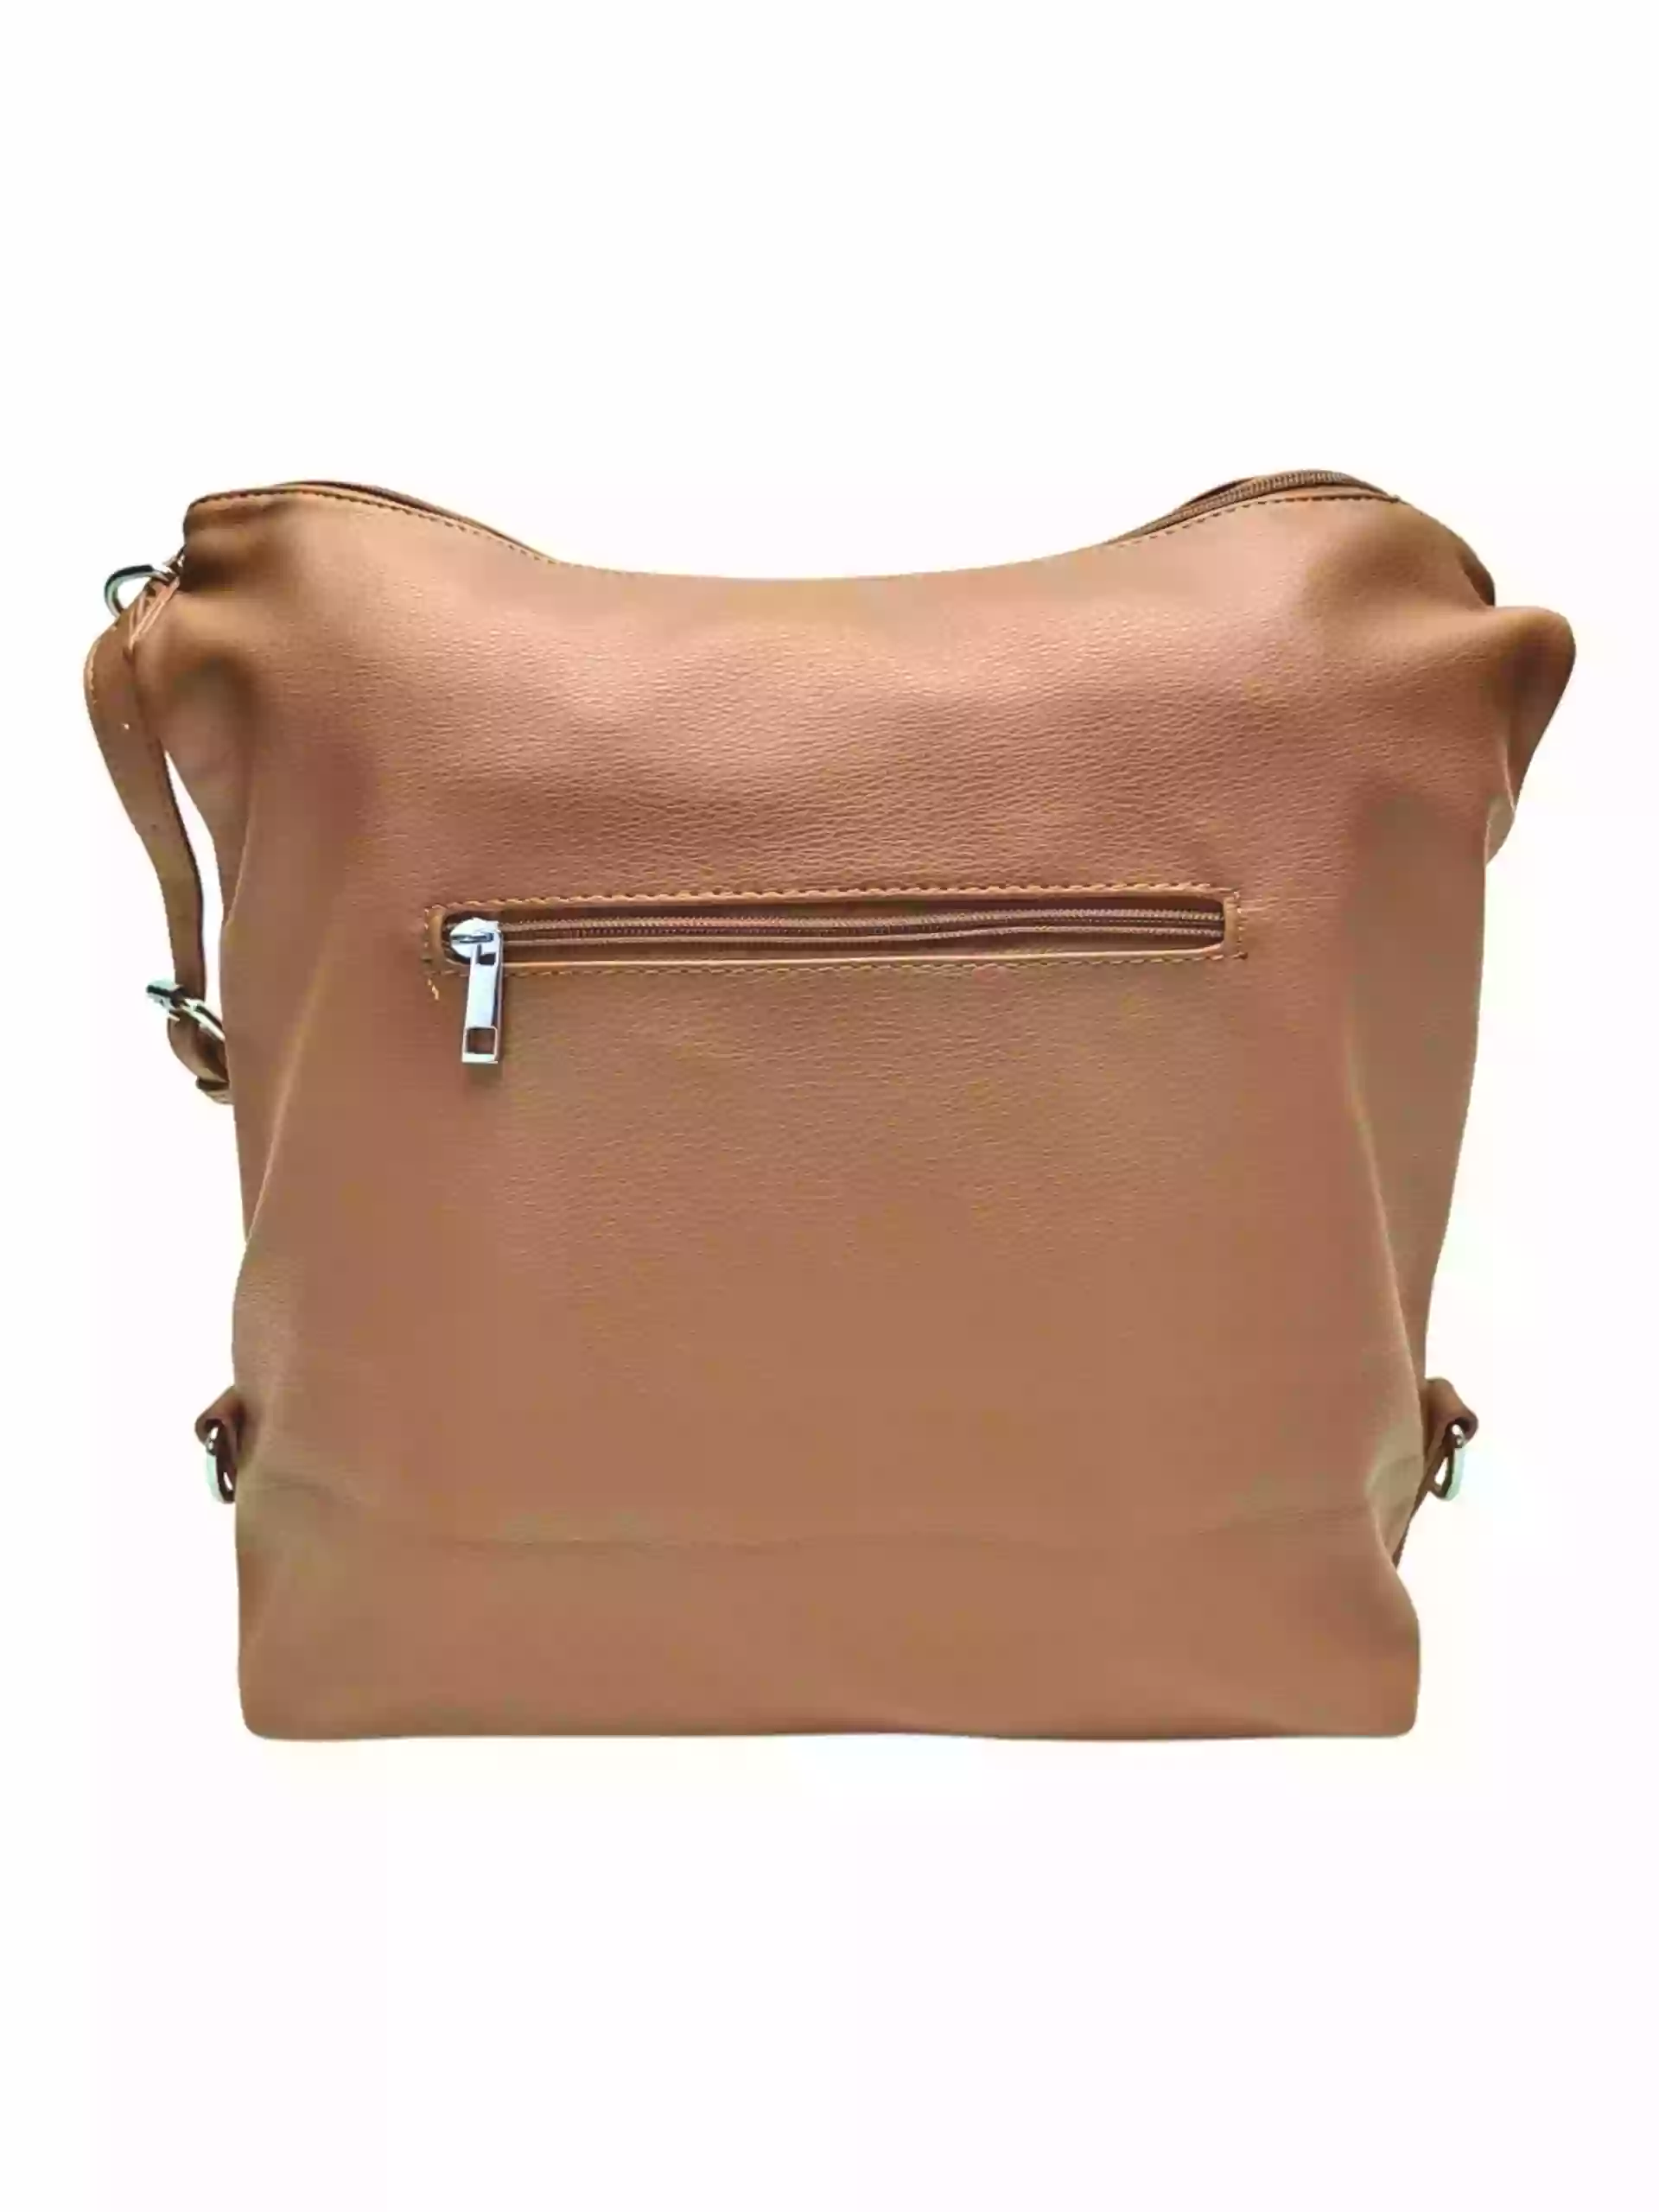 Velká středně hnědá kabelka a batoh 2v1, Tapple, X366, zadní strana kabelko-batohu 2v1